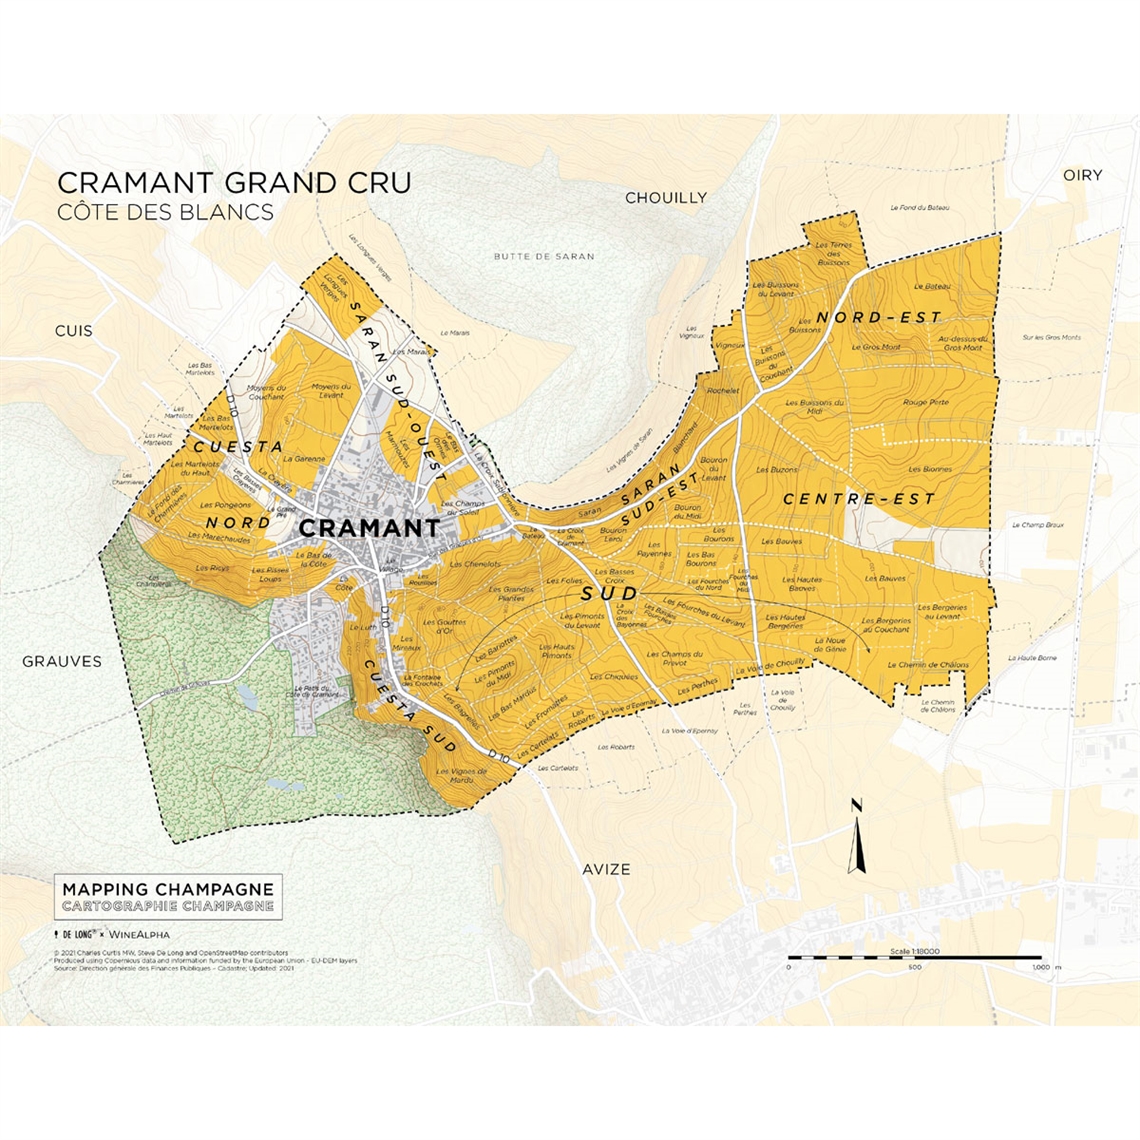 De Long’s Map of Côte des Blancs Champagne - Cramant Grand Cru